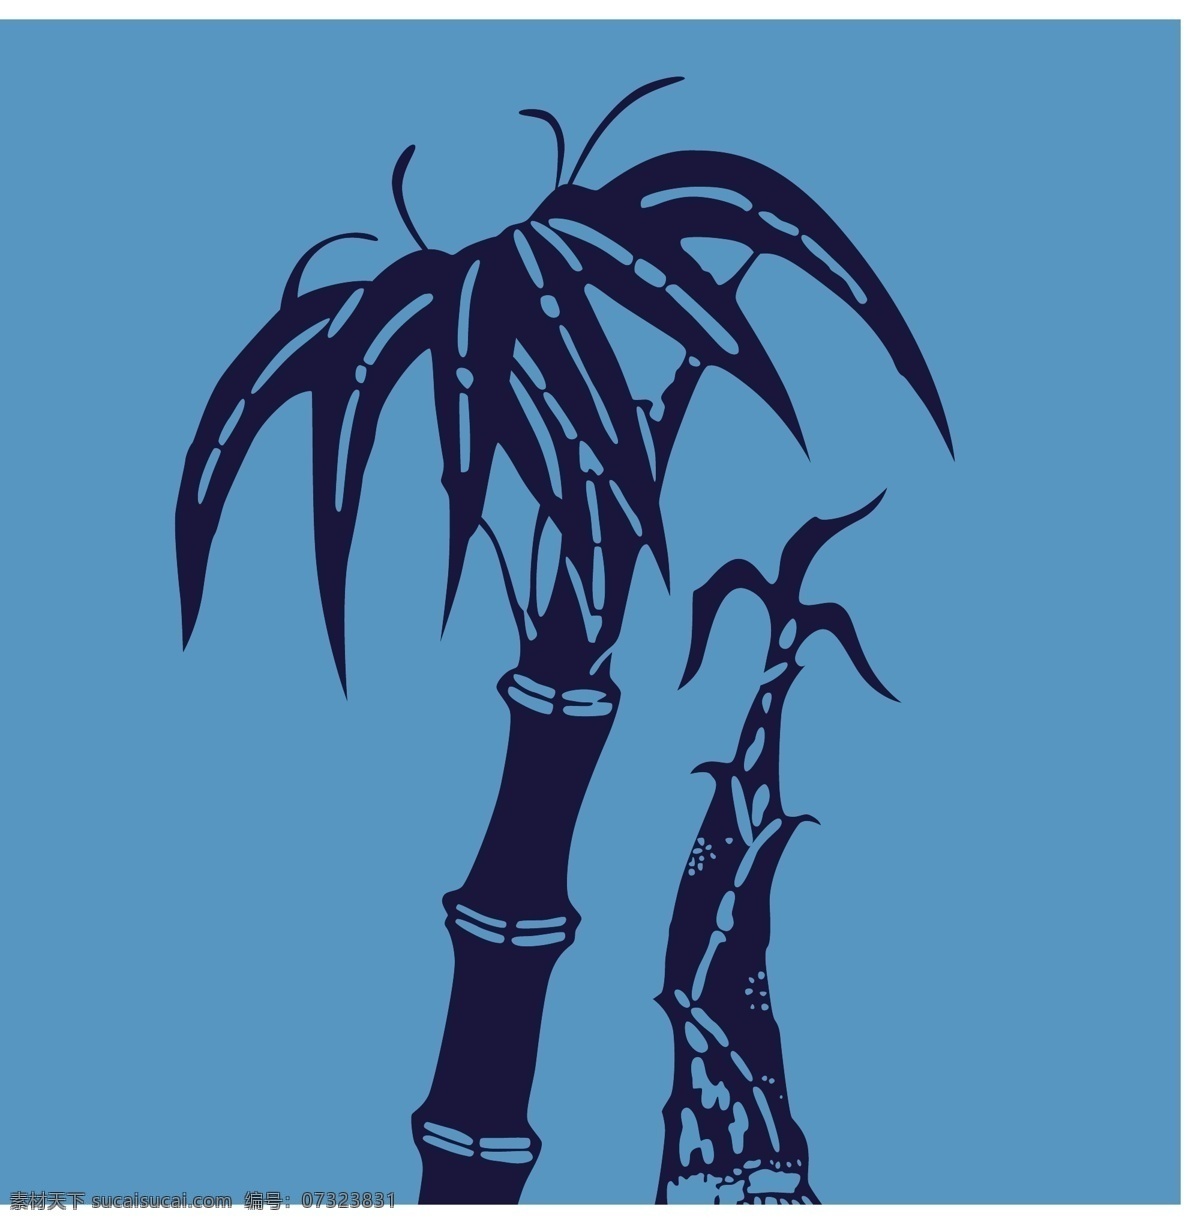 蓝色 竹子 冬笋 装饰 图 设计素材 矢量素材 装饰素材 设计元素 笋 装饰图案